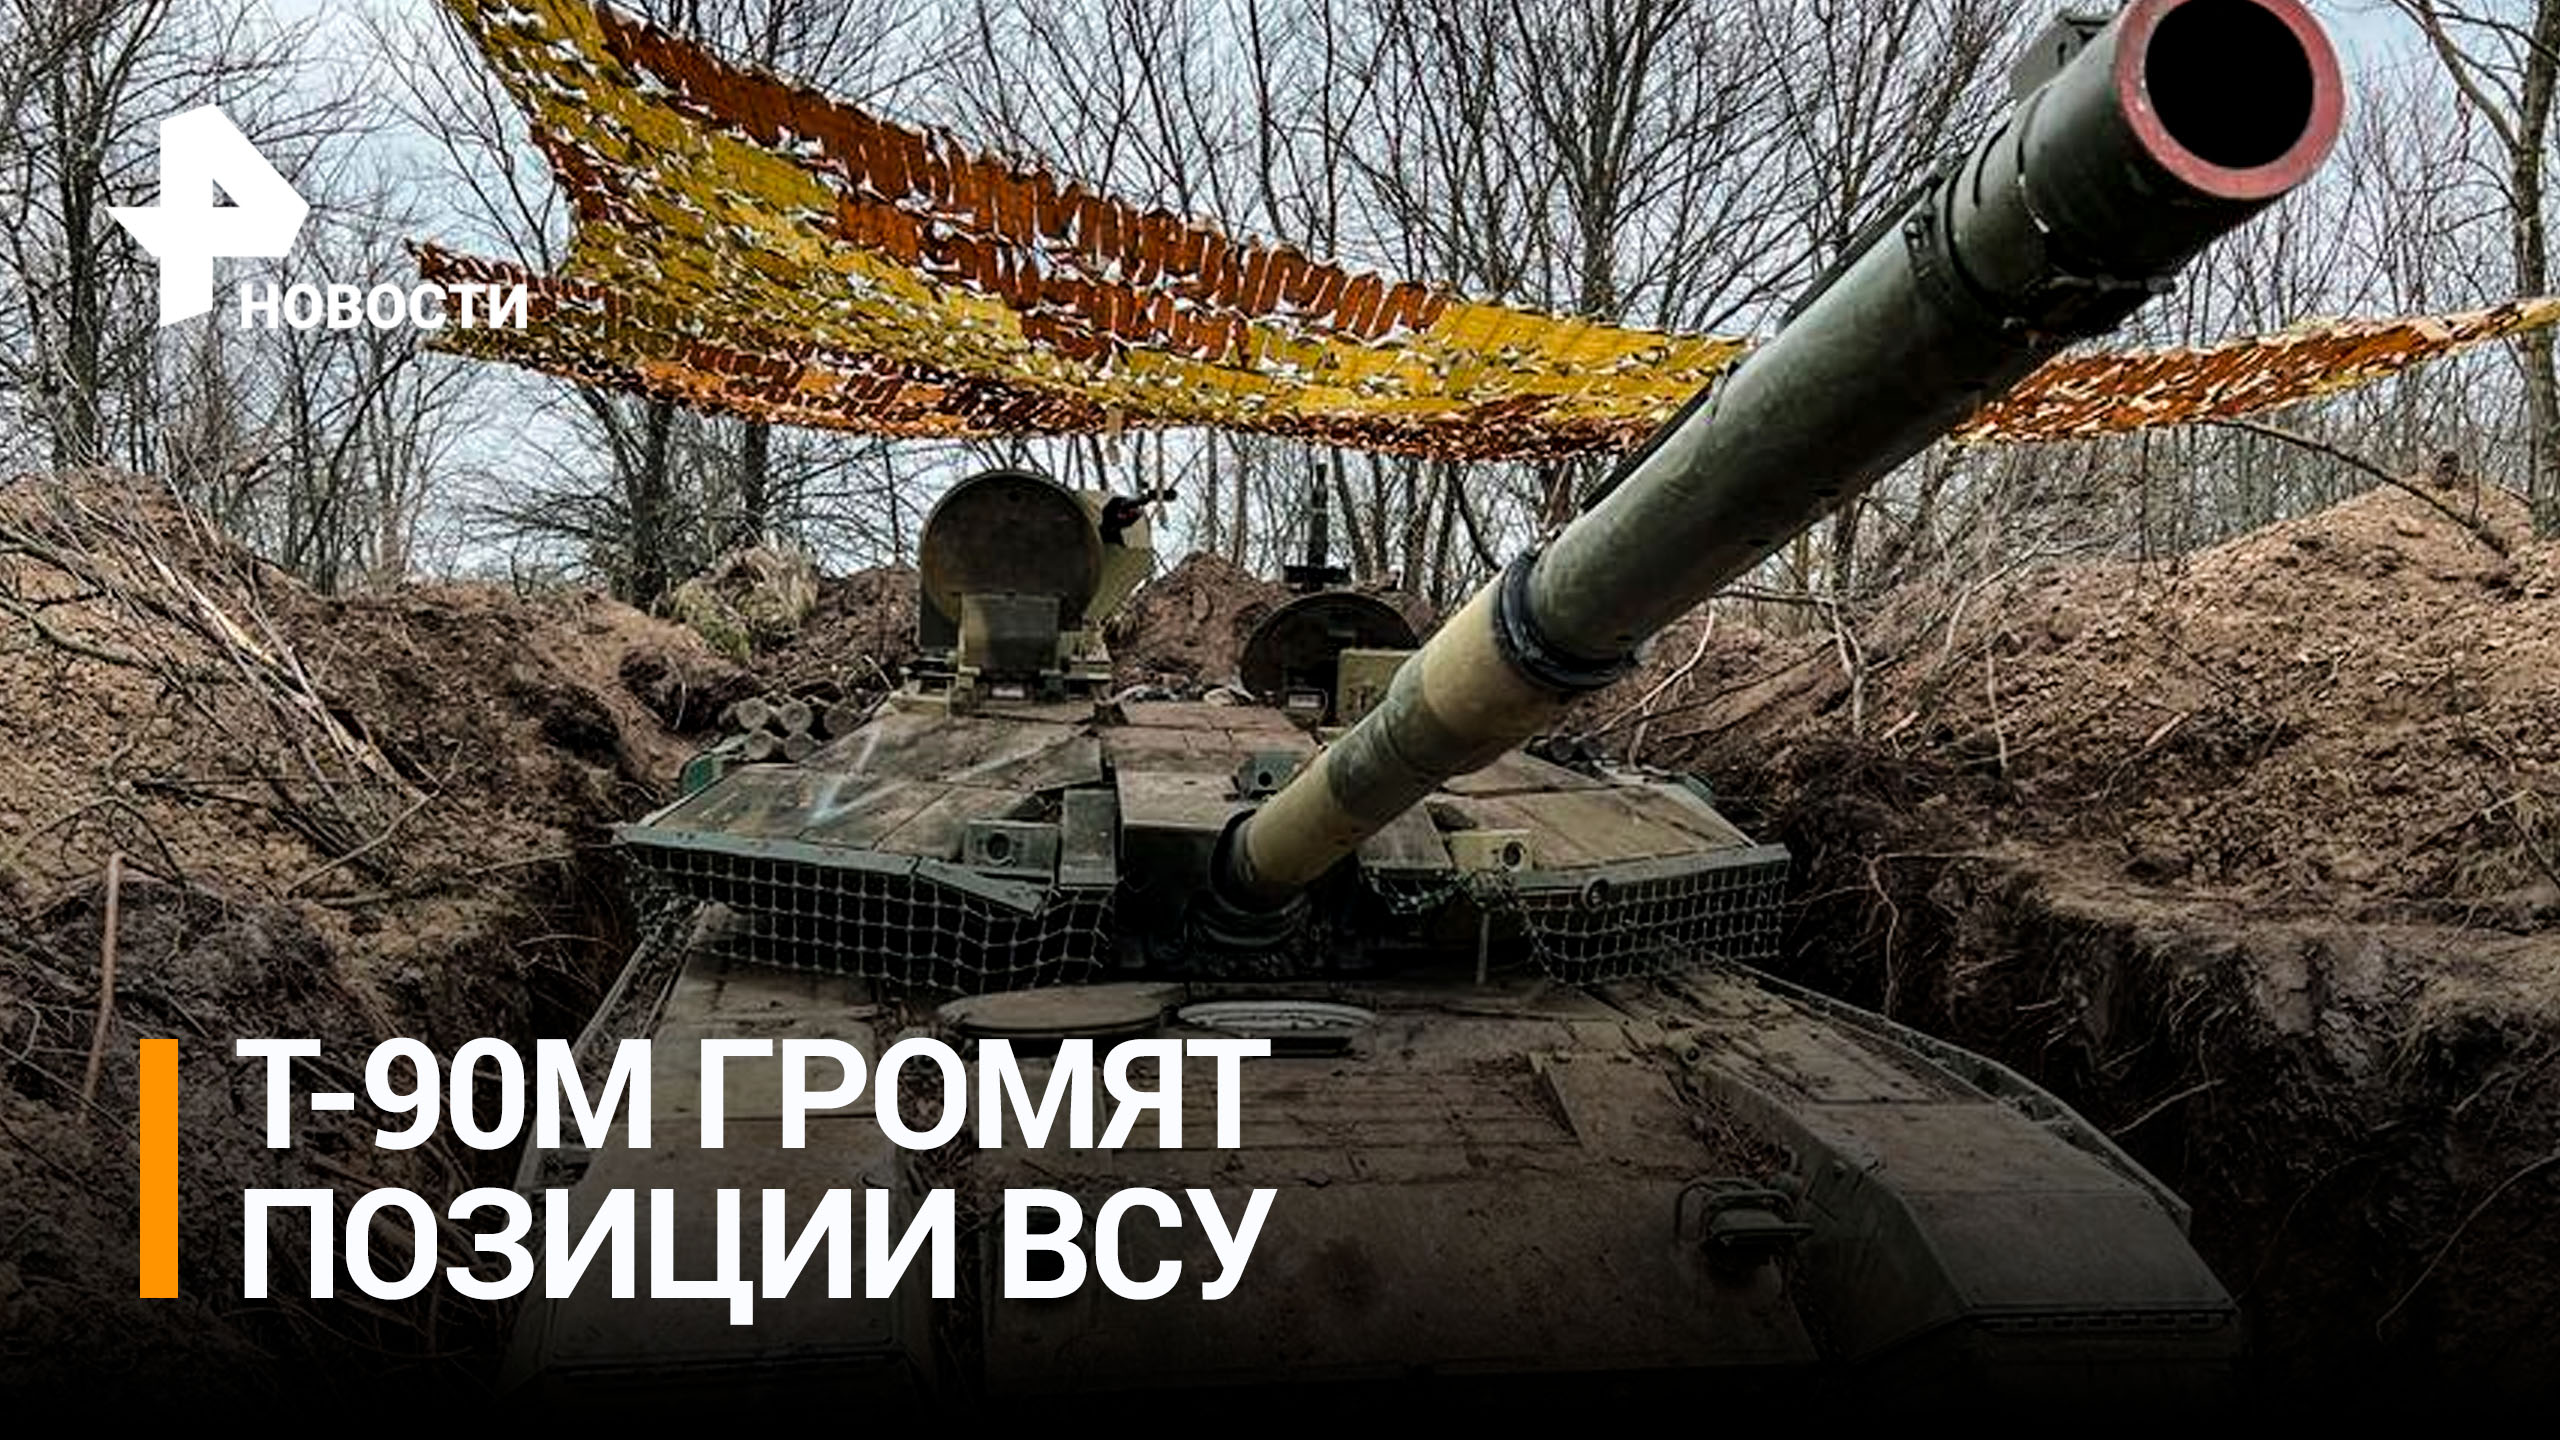 Как новейшие танки Т-90М "Прорыв" уничтожают ВСУ в ходе спецоперации / РЕН Новости